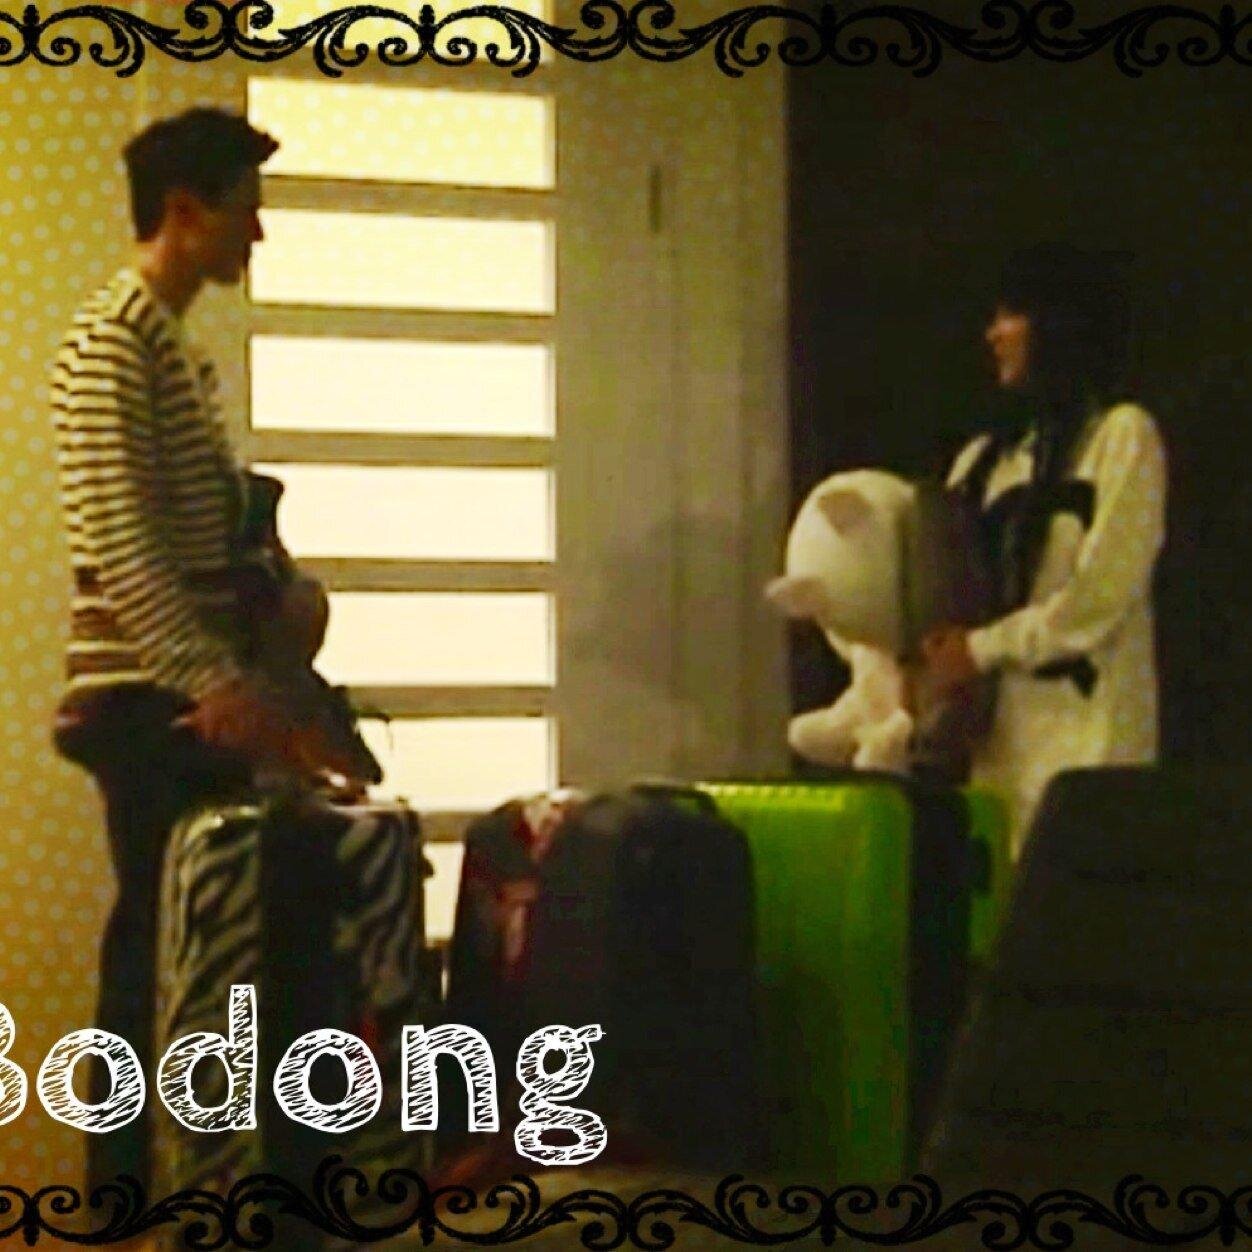 Twitter page of BODONG (Park Bom & Lee Dong Wook) Loveteam, SBS Roommate